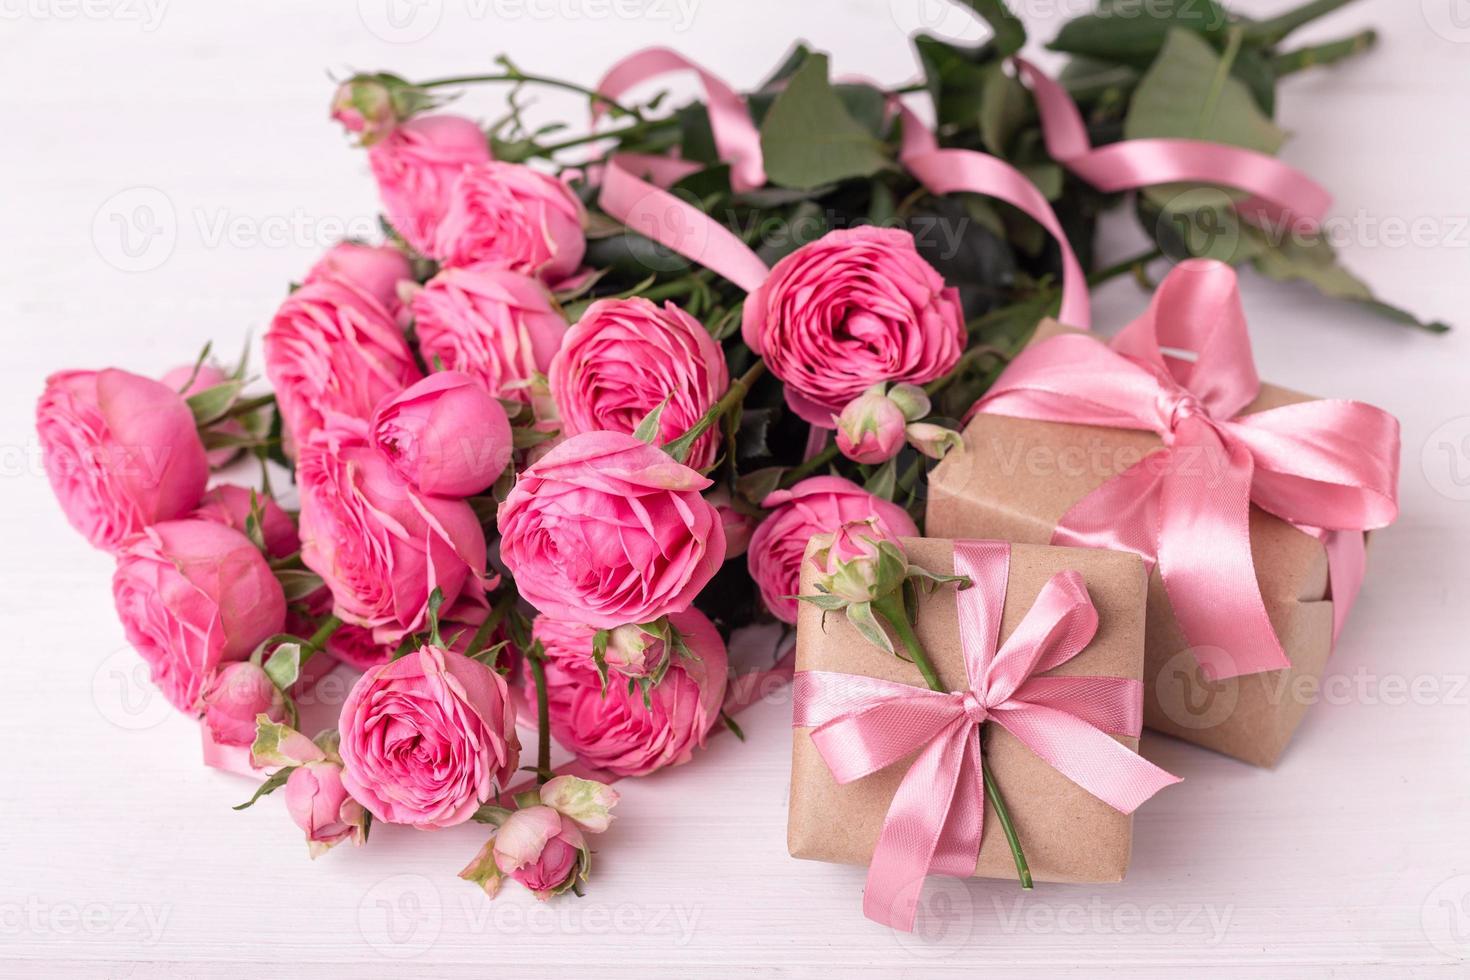 des roses rose pastel fraîches et des coffrets cadeaux enveloppés dans du papier kraft avec des rubans sur une table en bois blanche. photo